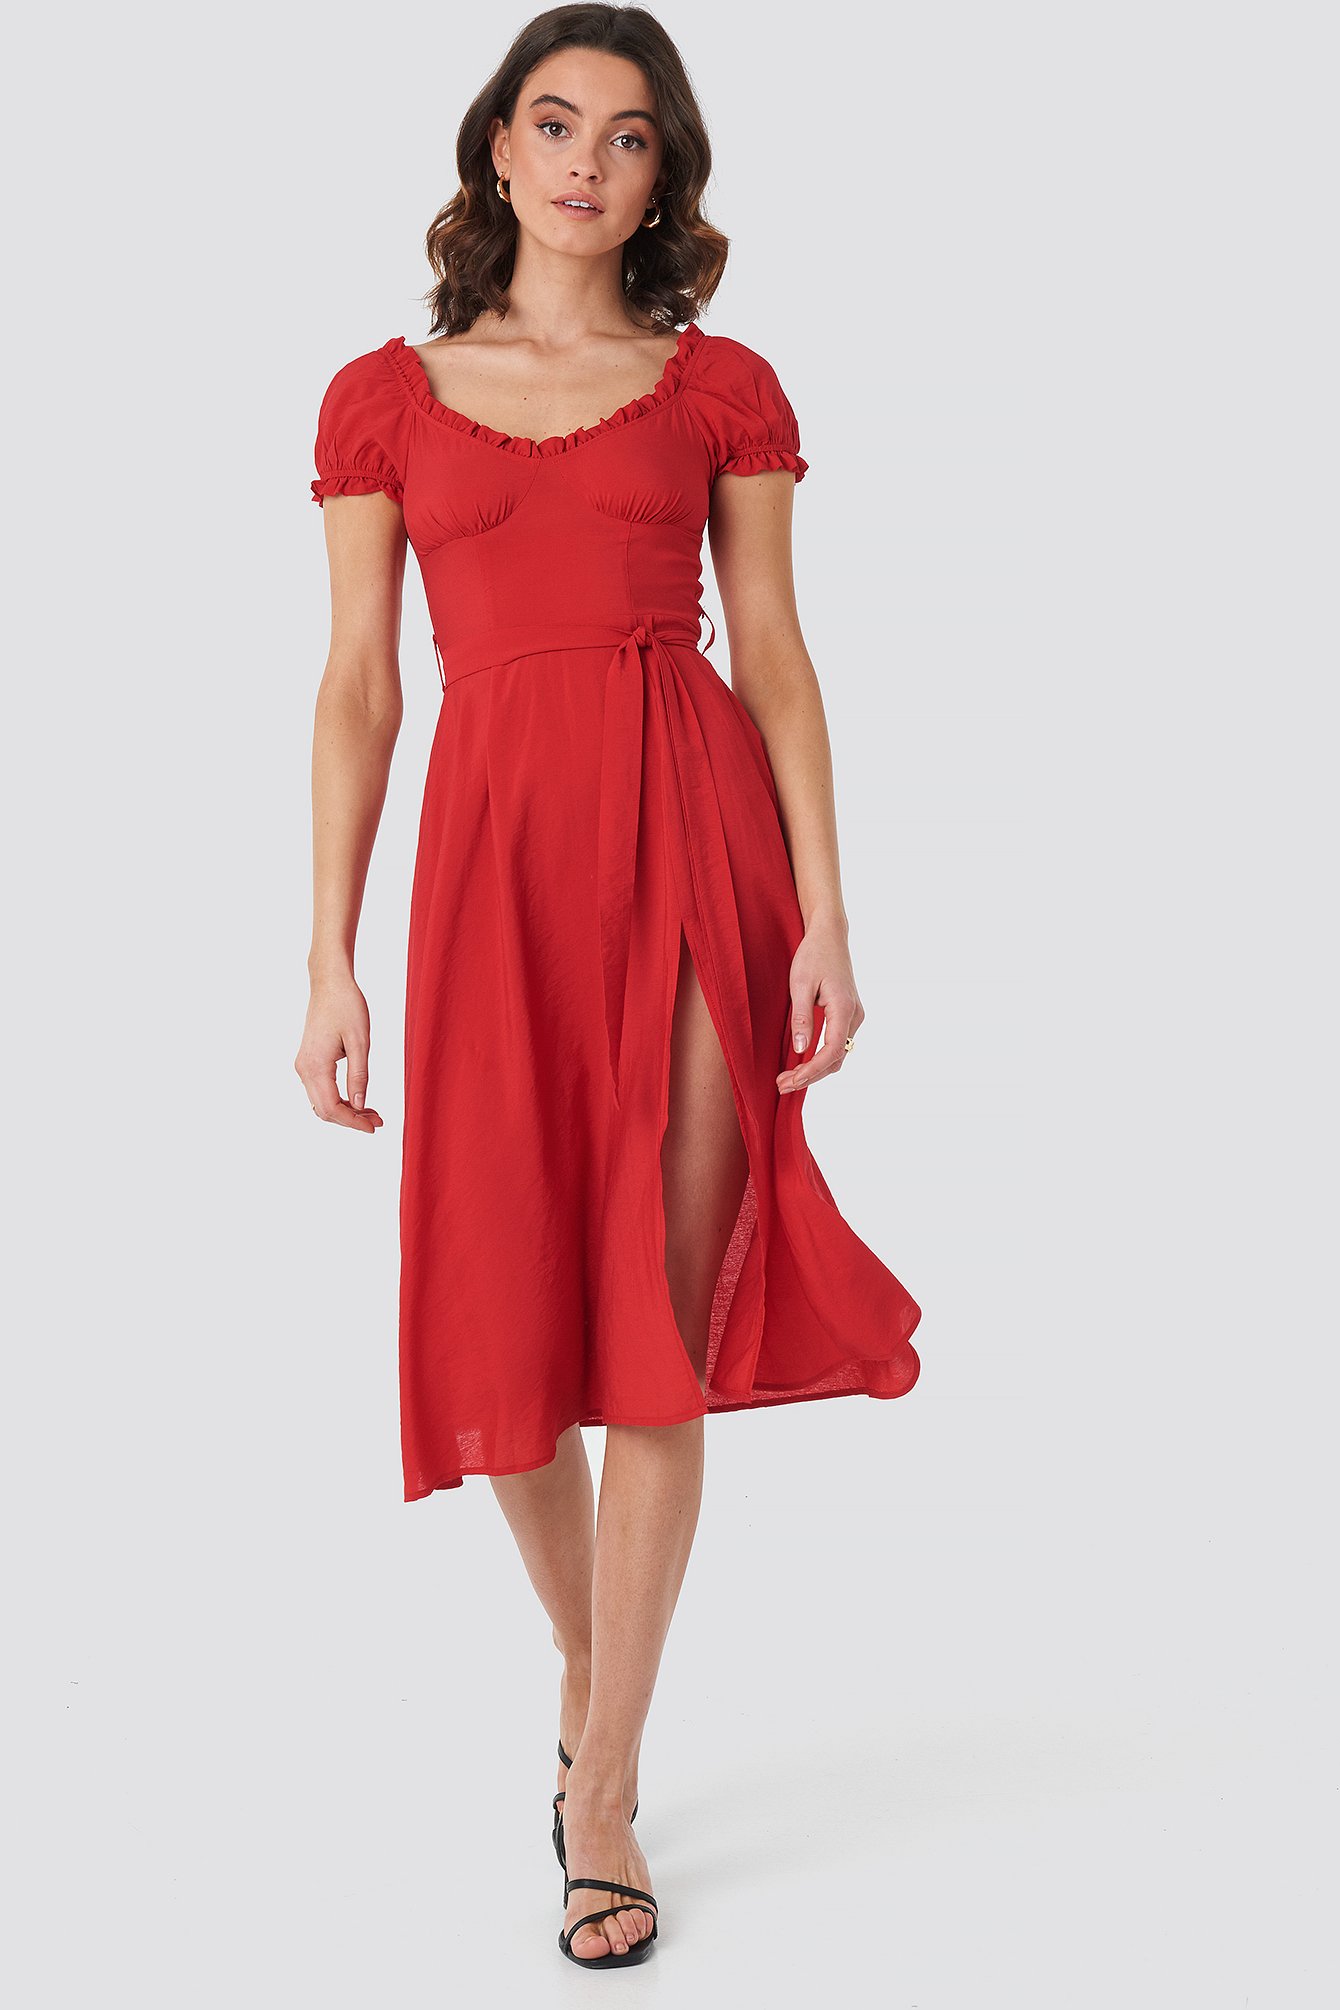 Red Off Shoulder Midi dress